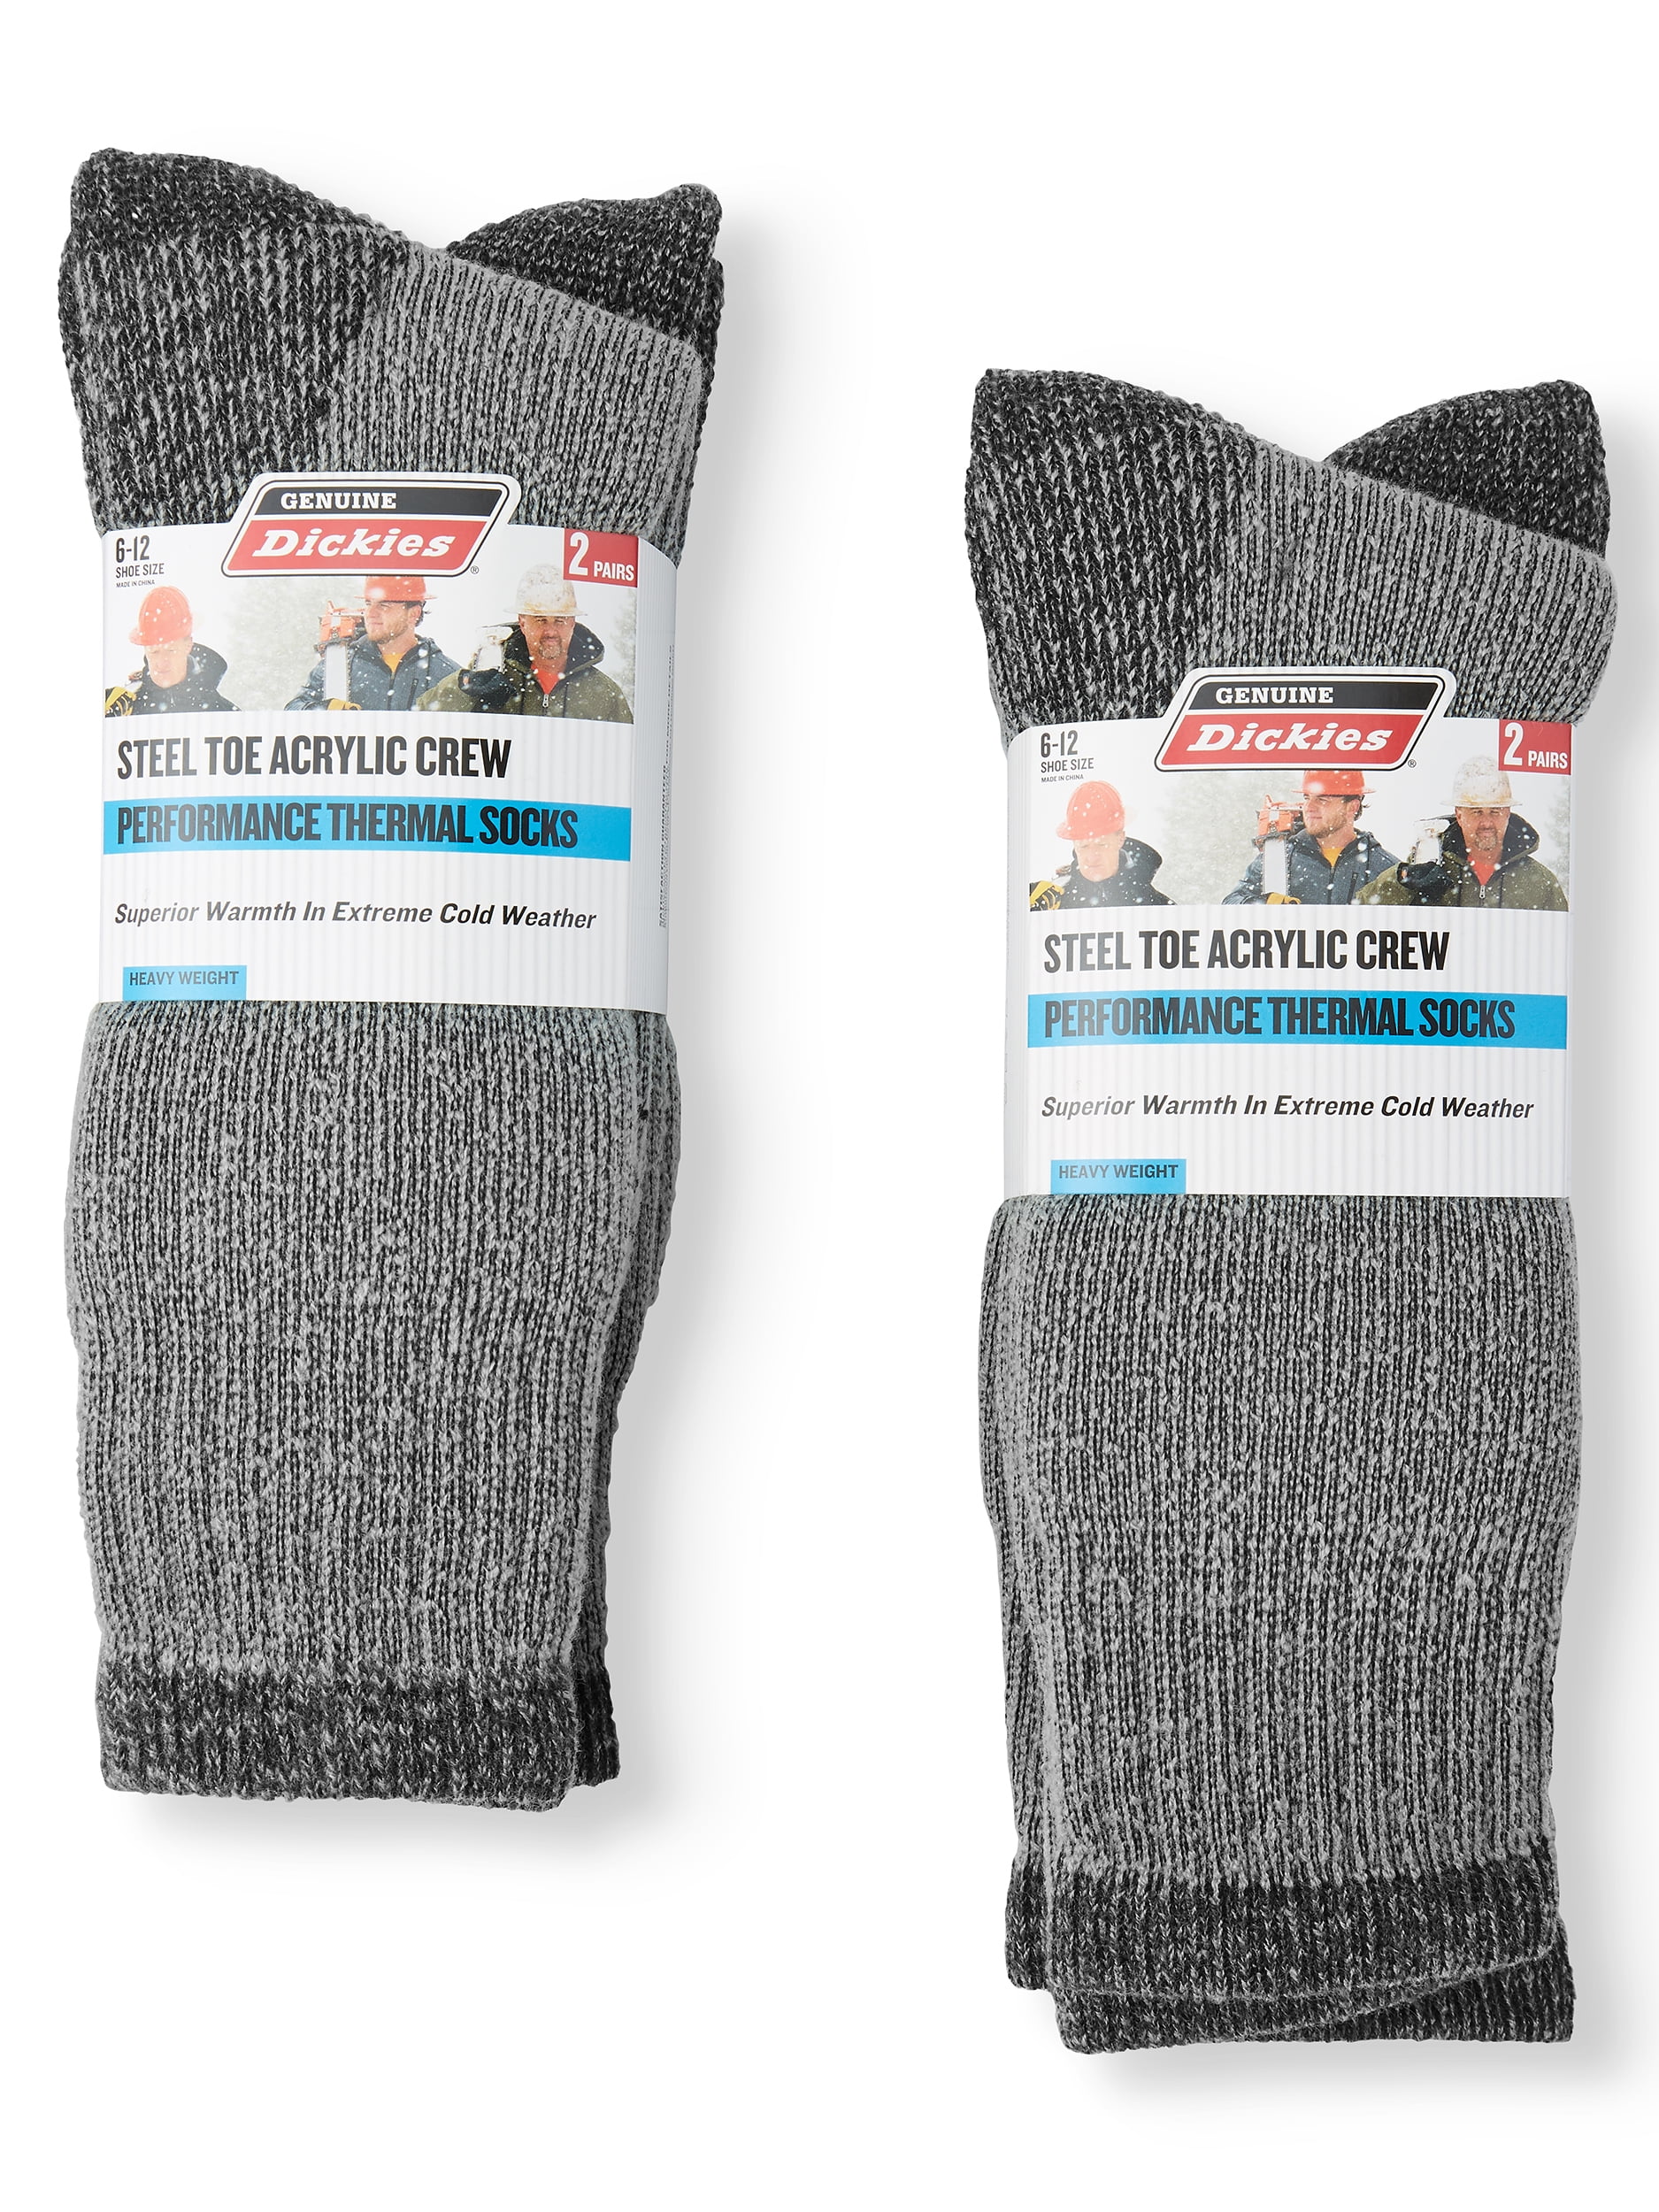 Genuine Dickies Men's Acrylic Thermal Steel Toe Crew Socks, 4-Pack 